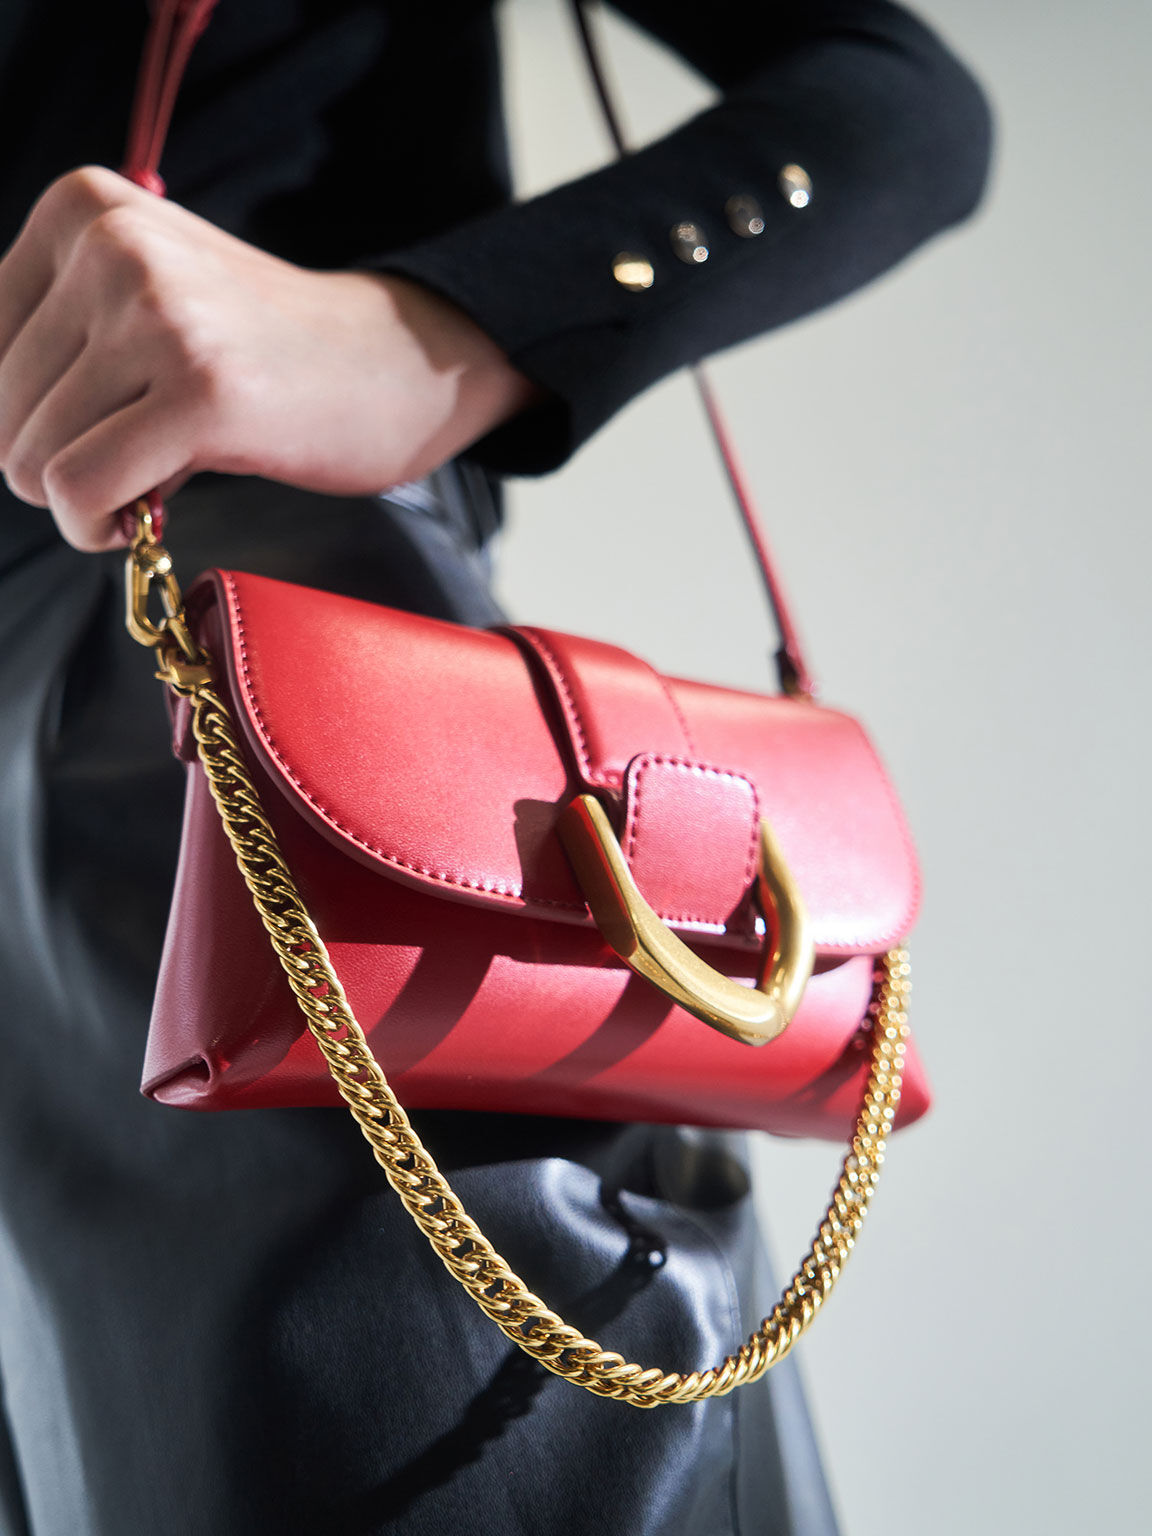 Túi đeo chéo nữ chữ nhật nắp gập Metallic Buckle, Đỏ, hi-res